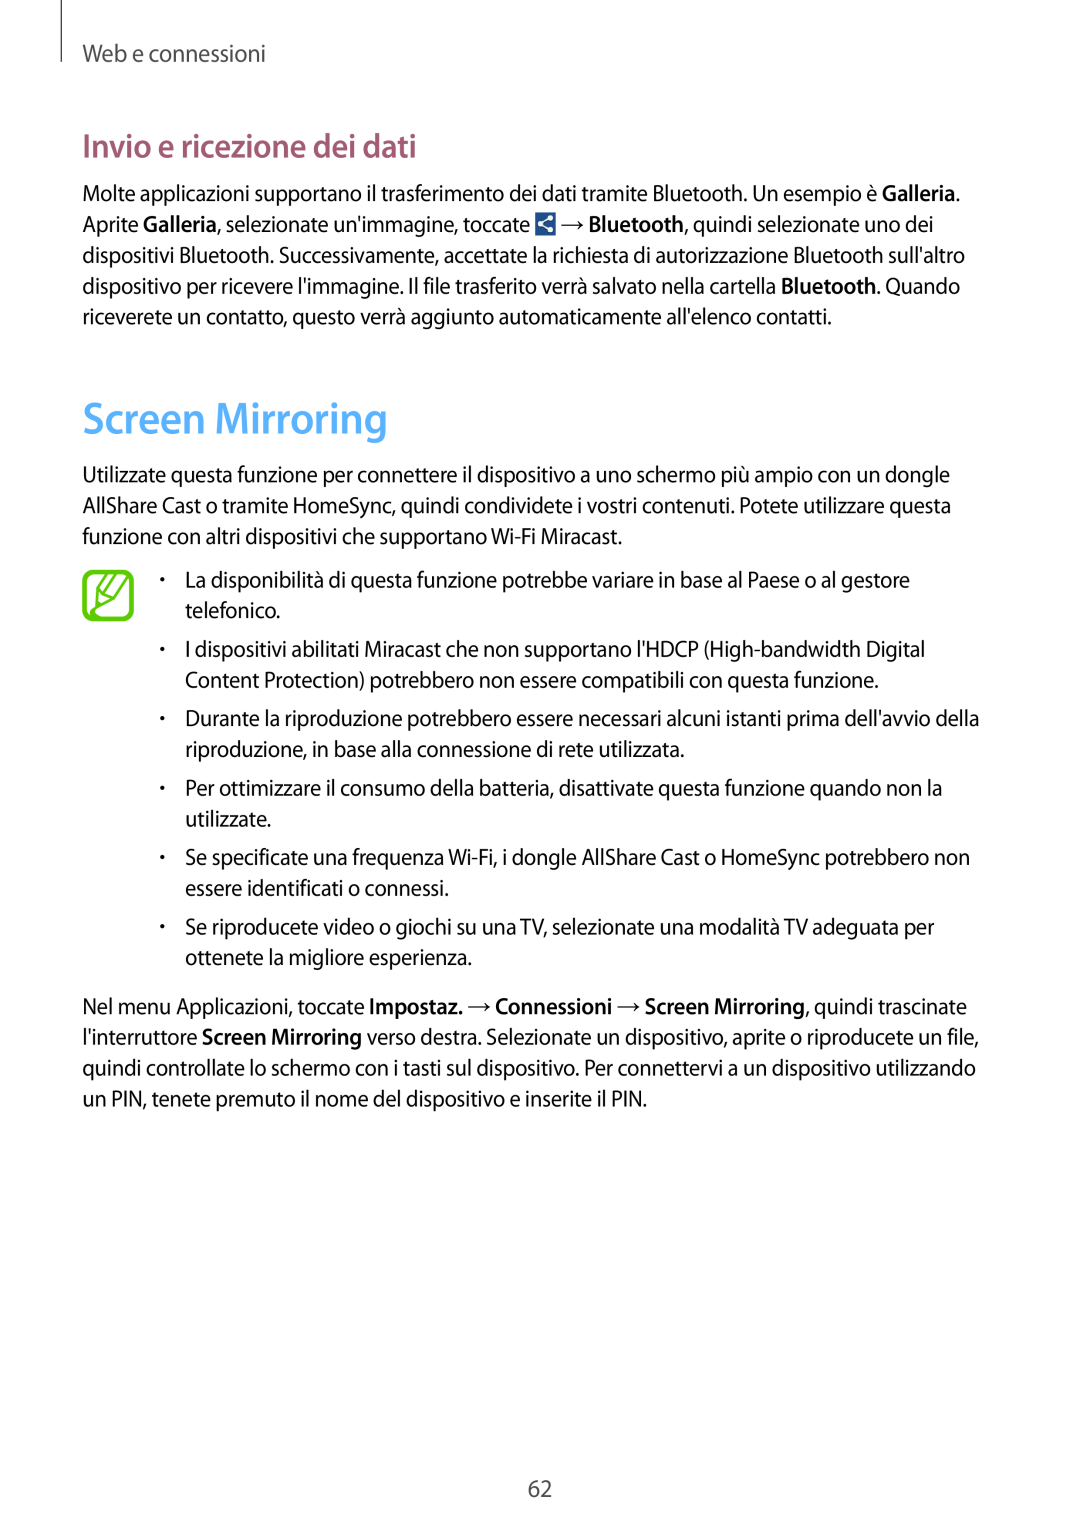 Samsung GT-I9195ZBAHUI, GT-I9195DKYPLS, GT-I9195ZKAWIN manual Screen Mirroring, Invio e ricezione dei dati, Web e connessioni 